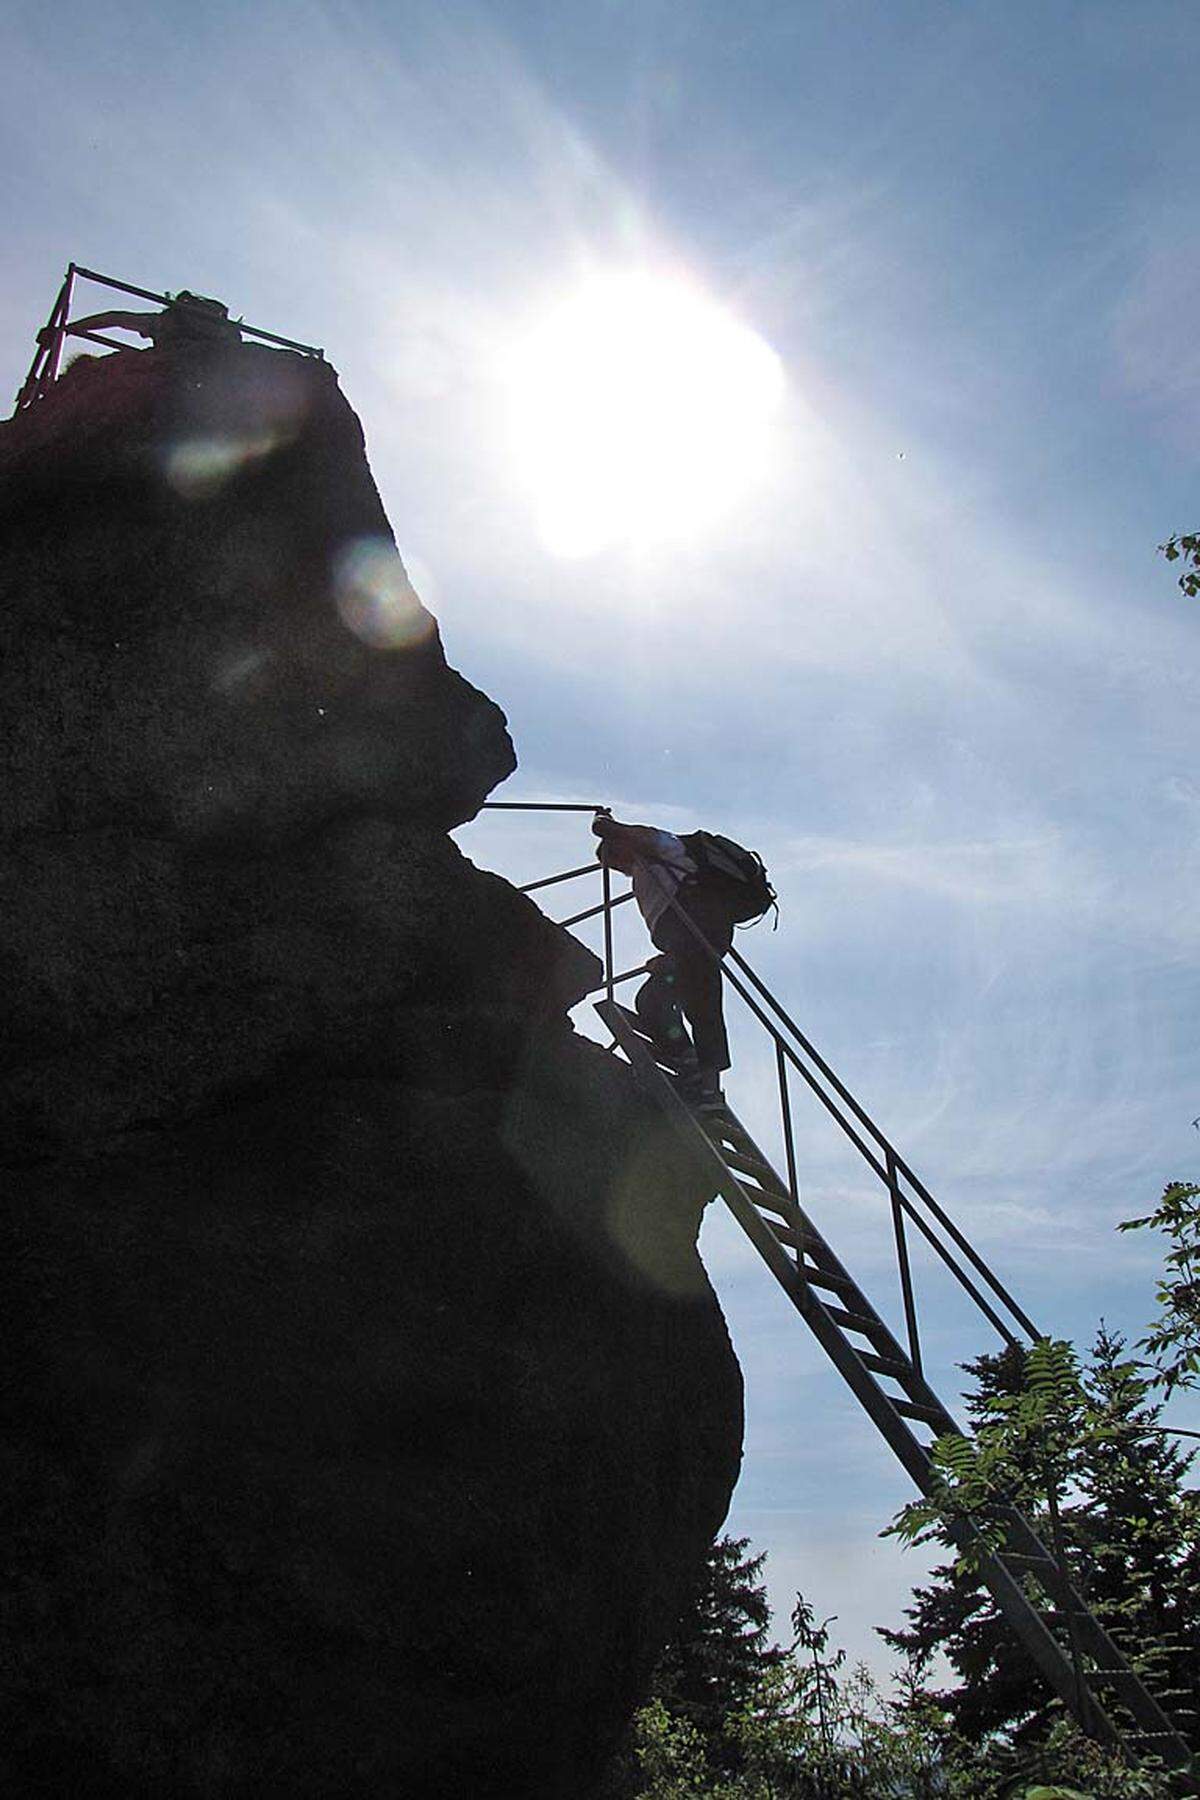 ... dem Gipfel des Schafstein (748 m), dessen 350 Tonnen schwerer Granitblock über eine Leiter erklommen werden kann. Wem das zu einfach ist, der kann seine Kletterfertigkeiten an einem der zahlreichen Granitfelsen in den Wäldern trainieren.